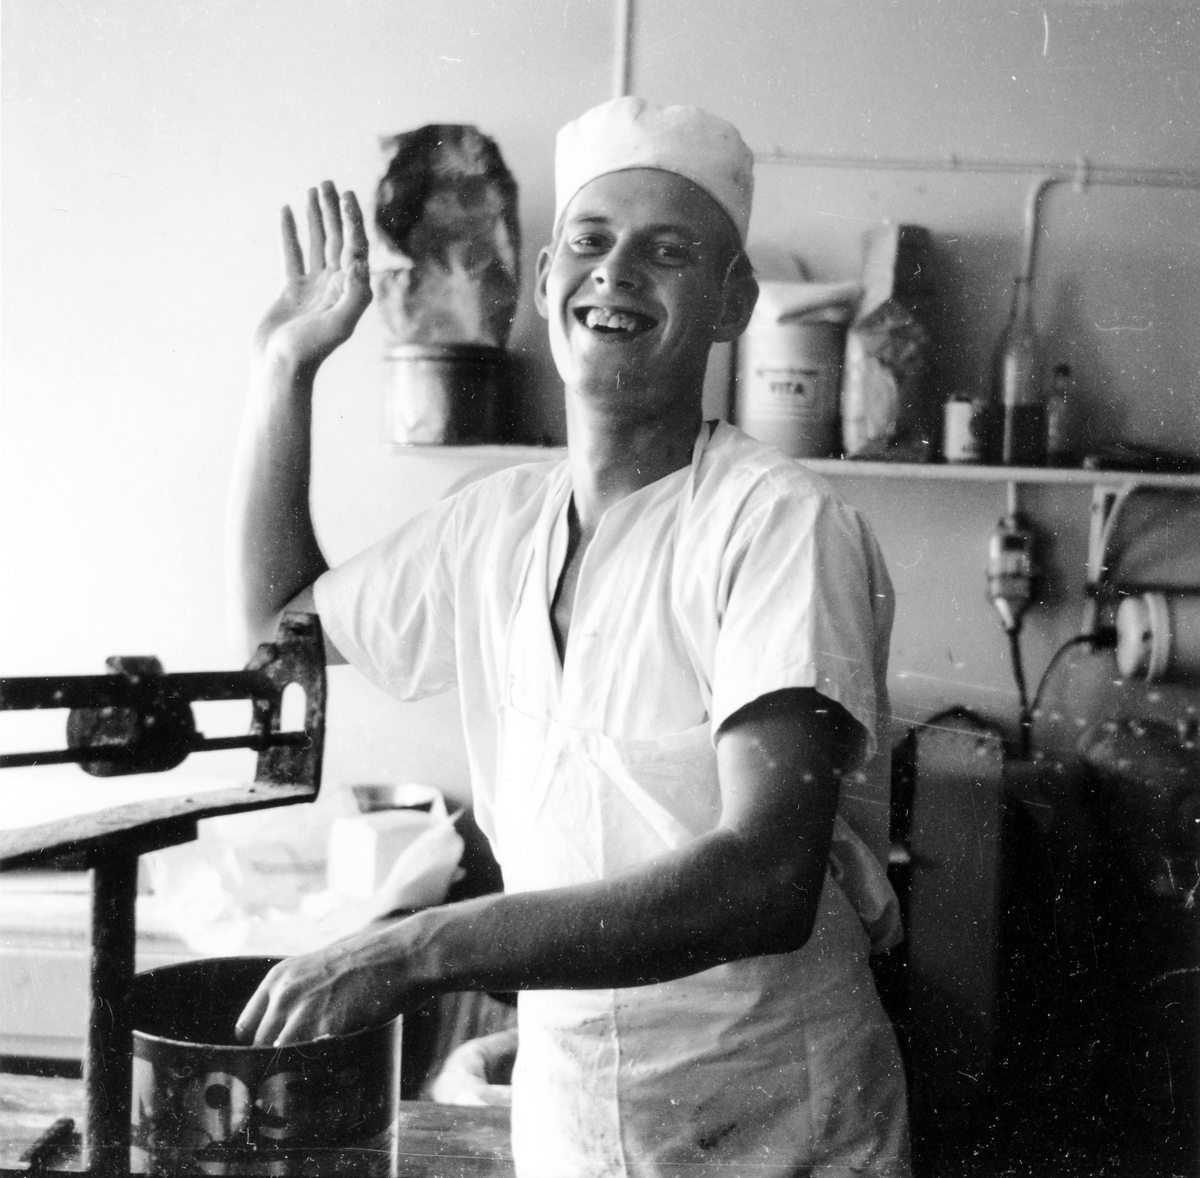 En man i vit rock och mössa vinkar leende mot kameran. Köket på Gustavs konditori, kv Gustaf vid Stora torget. 
Innehavaren av konditoriet hette Gustav Johansson enl adresskalendern 1950.